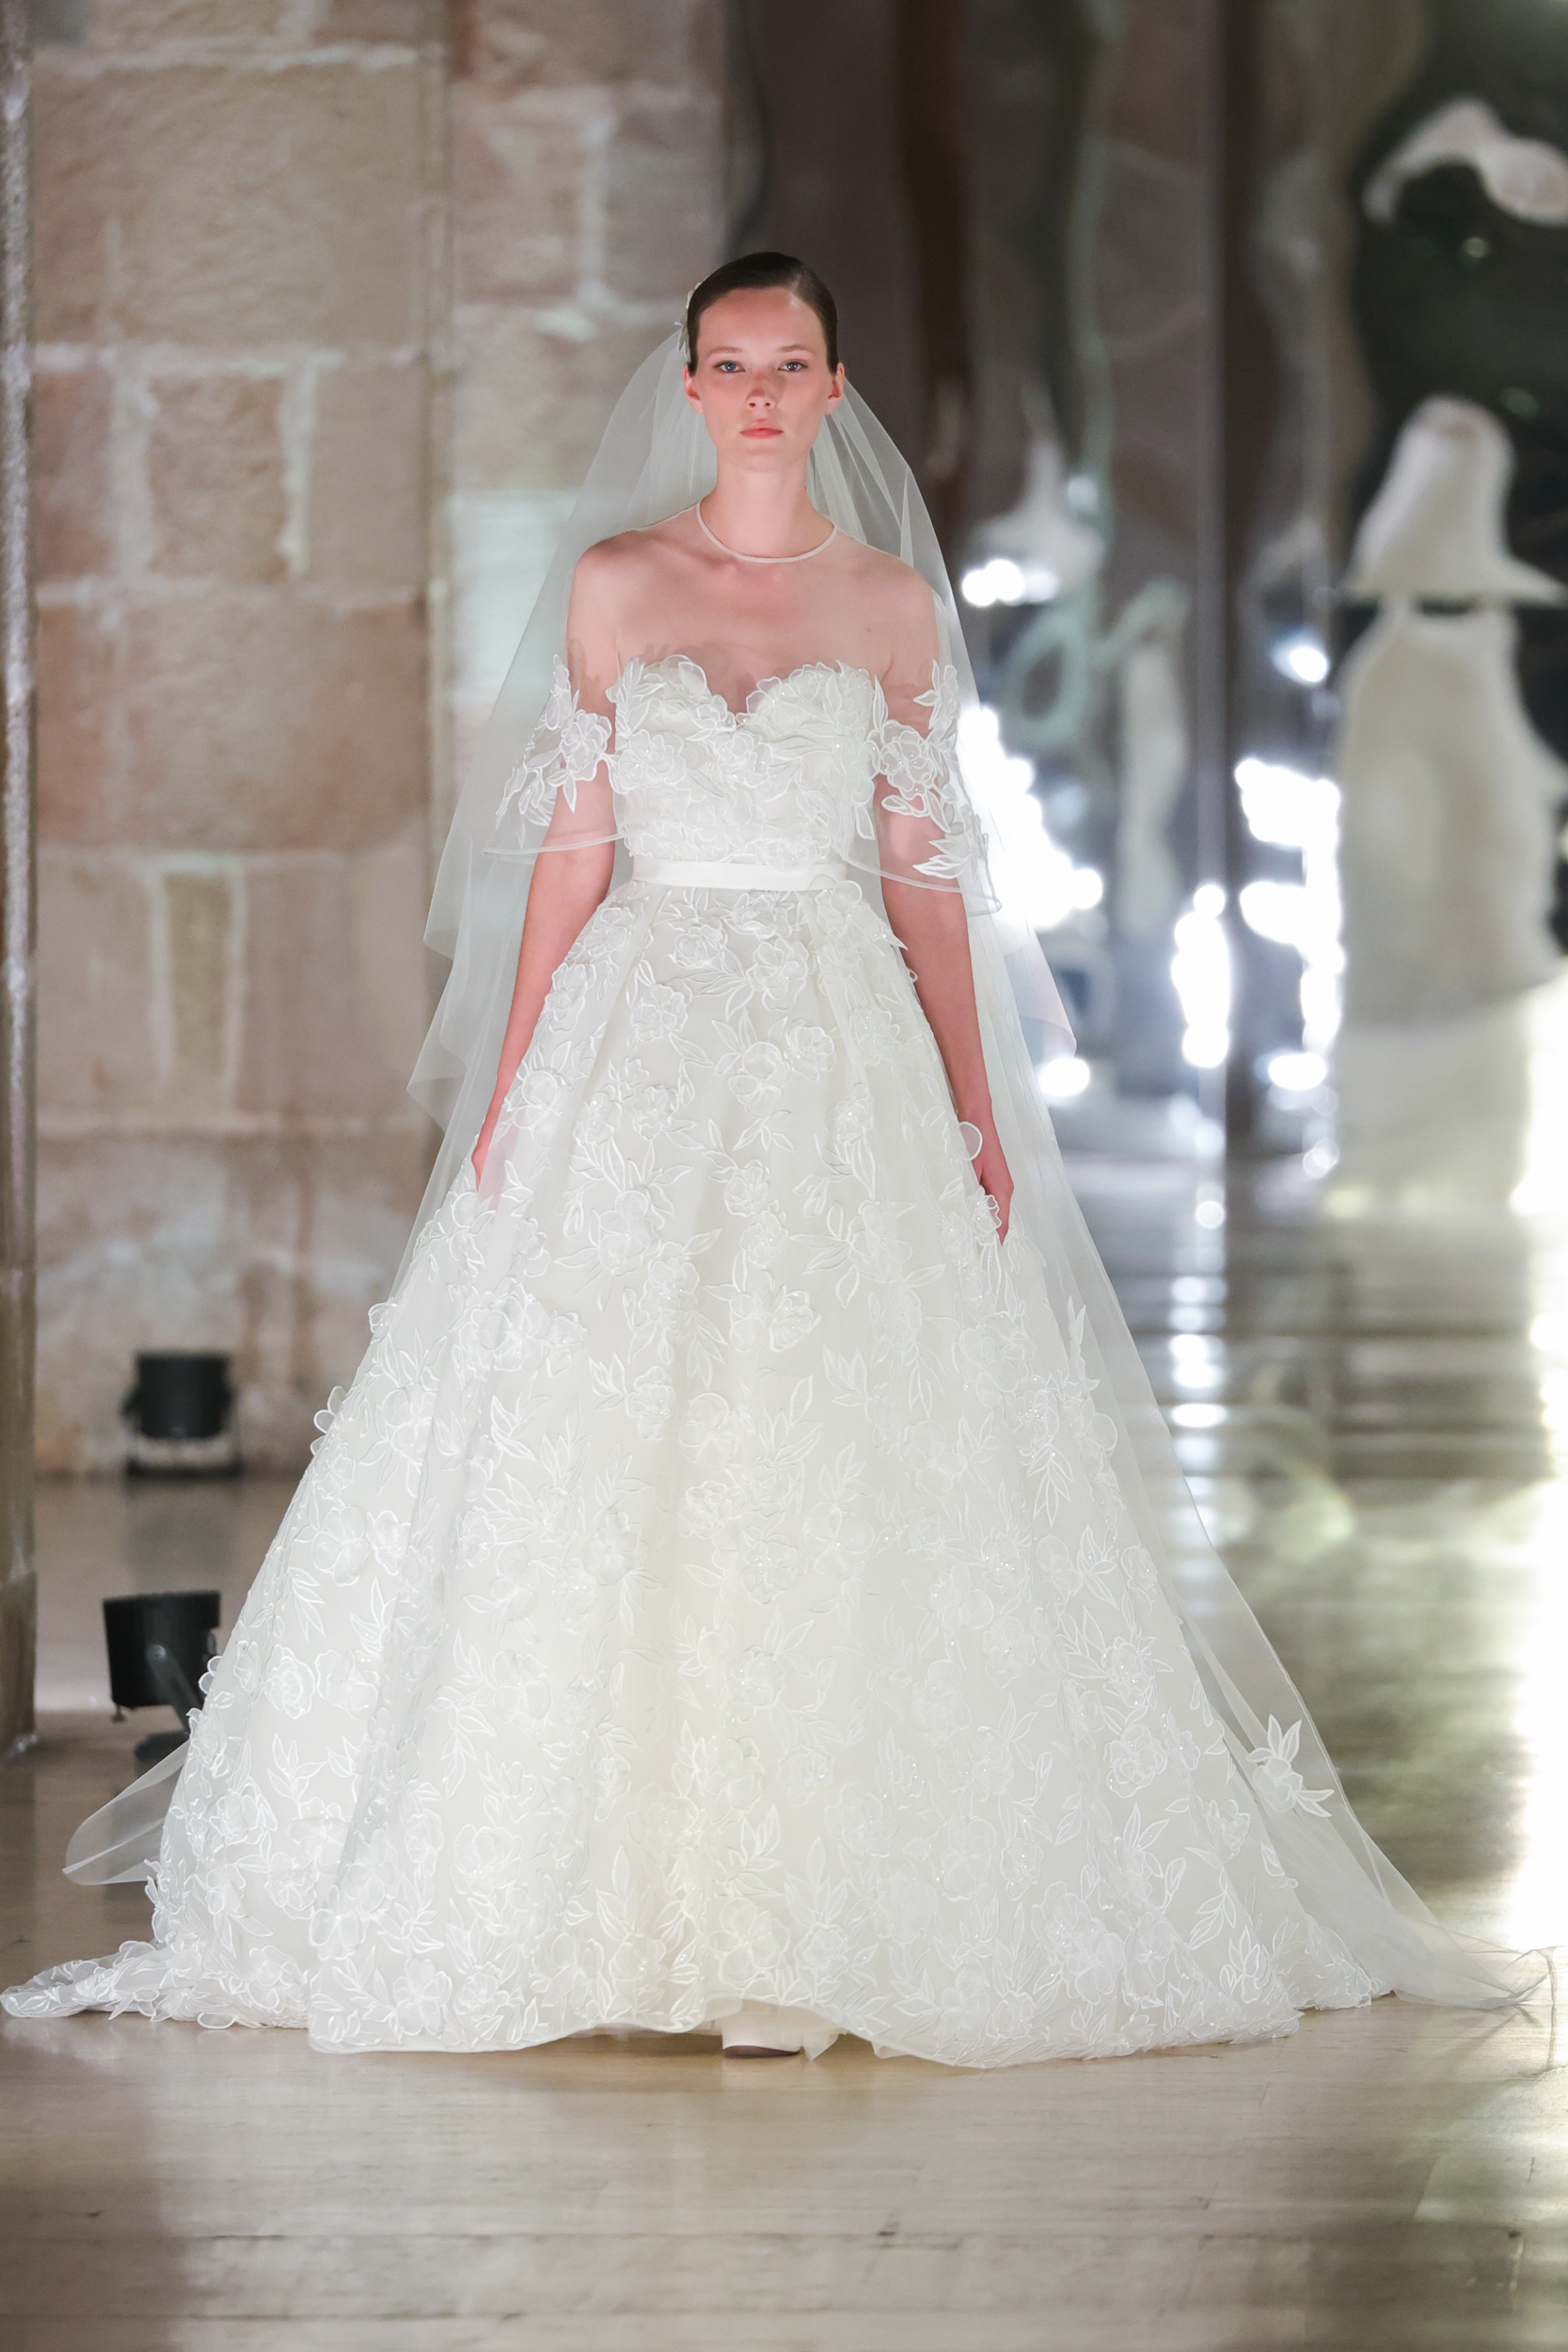 Elie by Elie Saab Wedding Dresses 2011